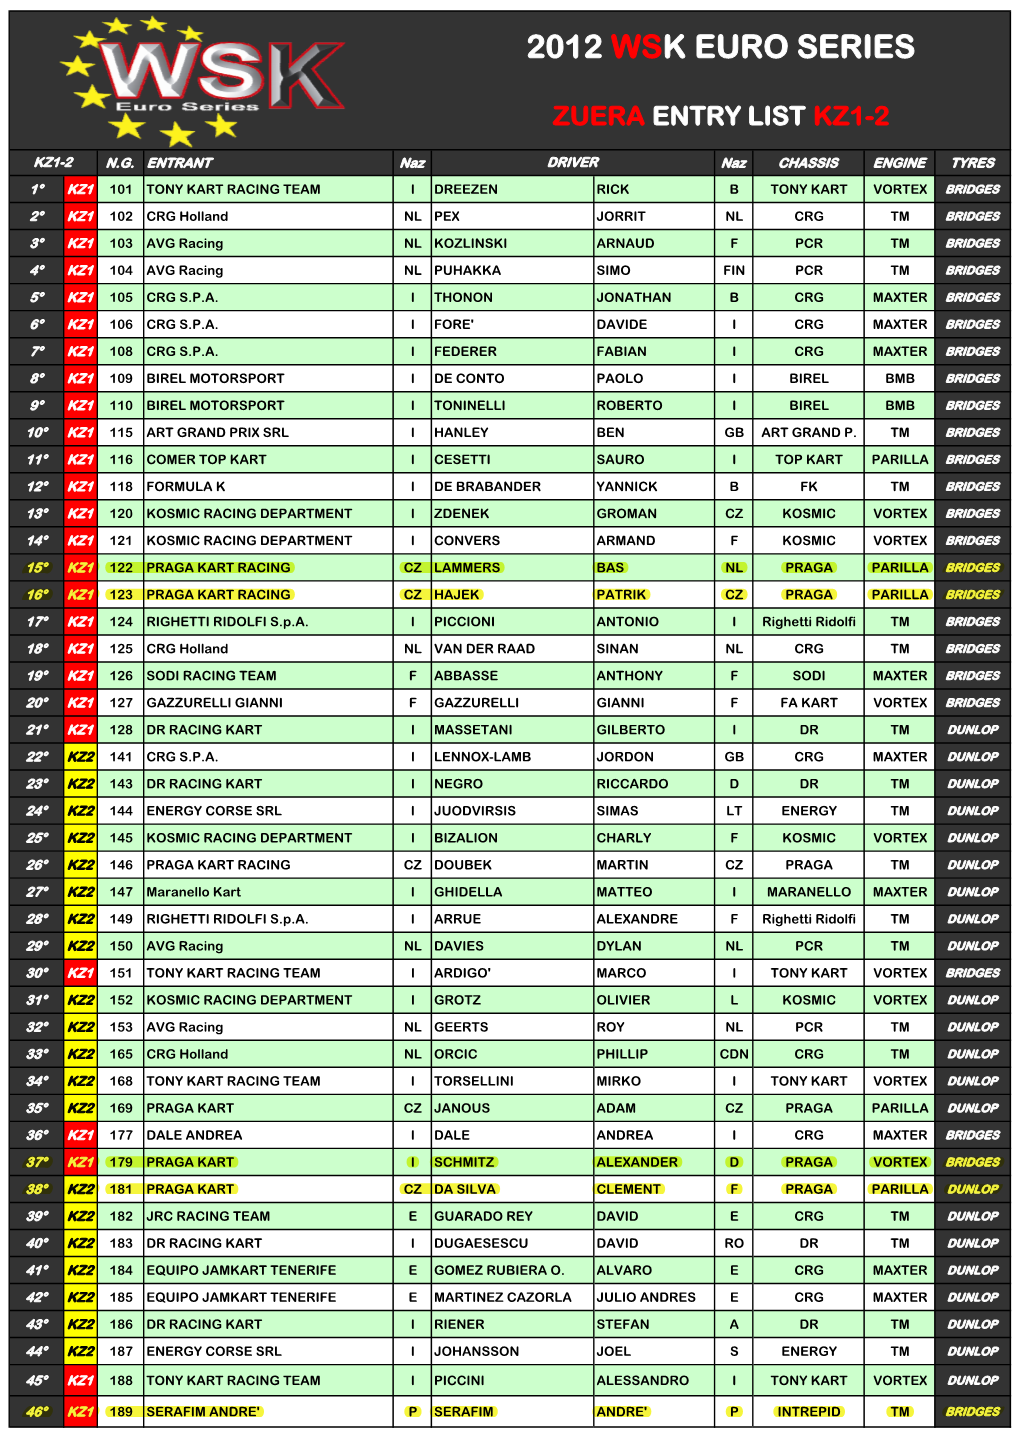 2012 Wsk Euro Series Zuera Entry List Kz1-2